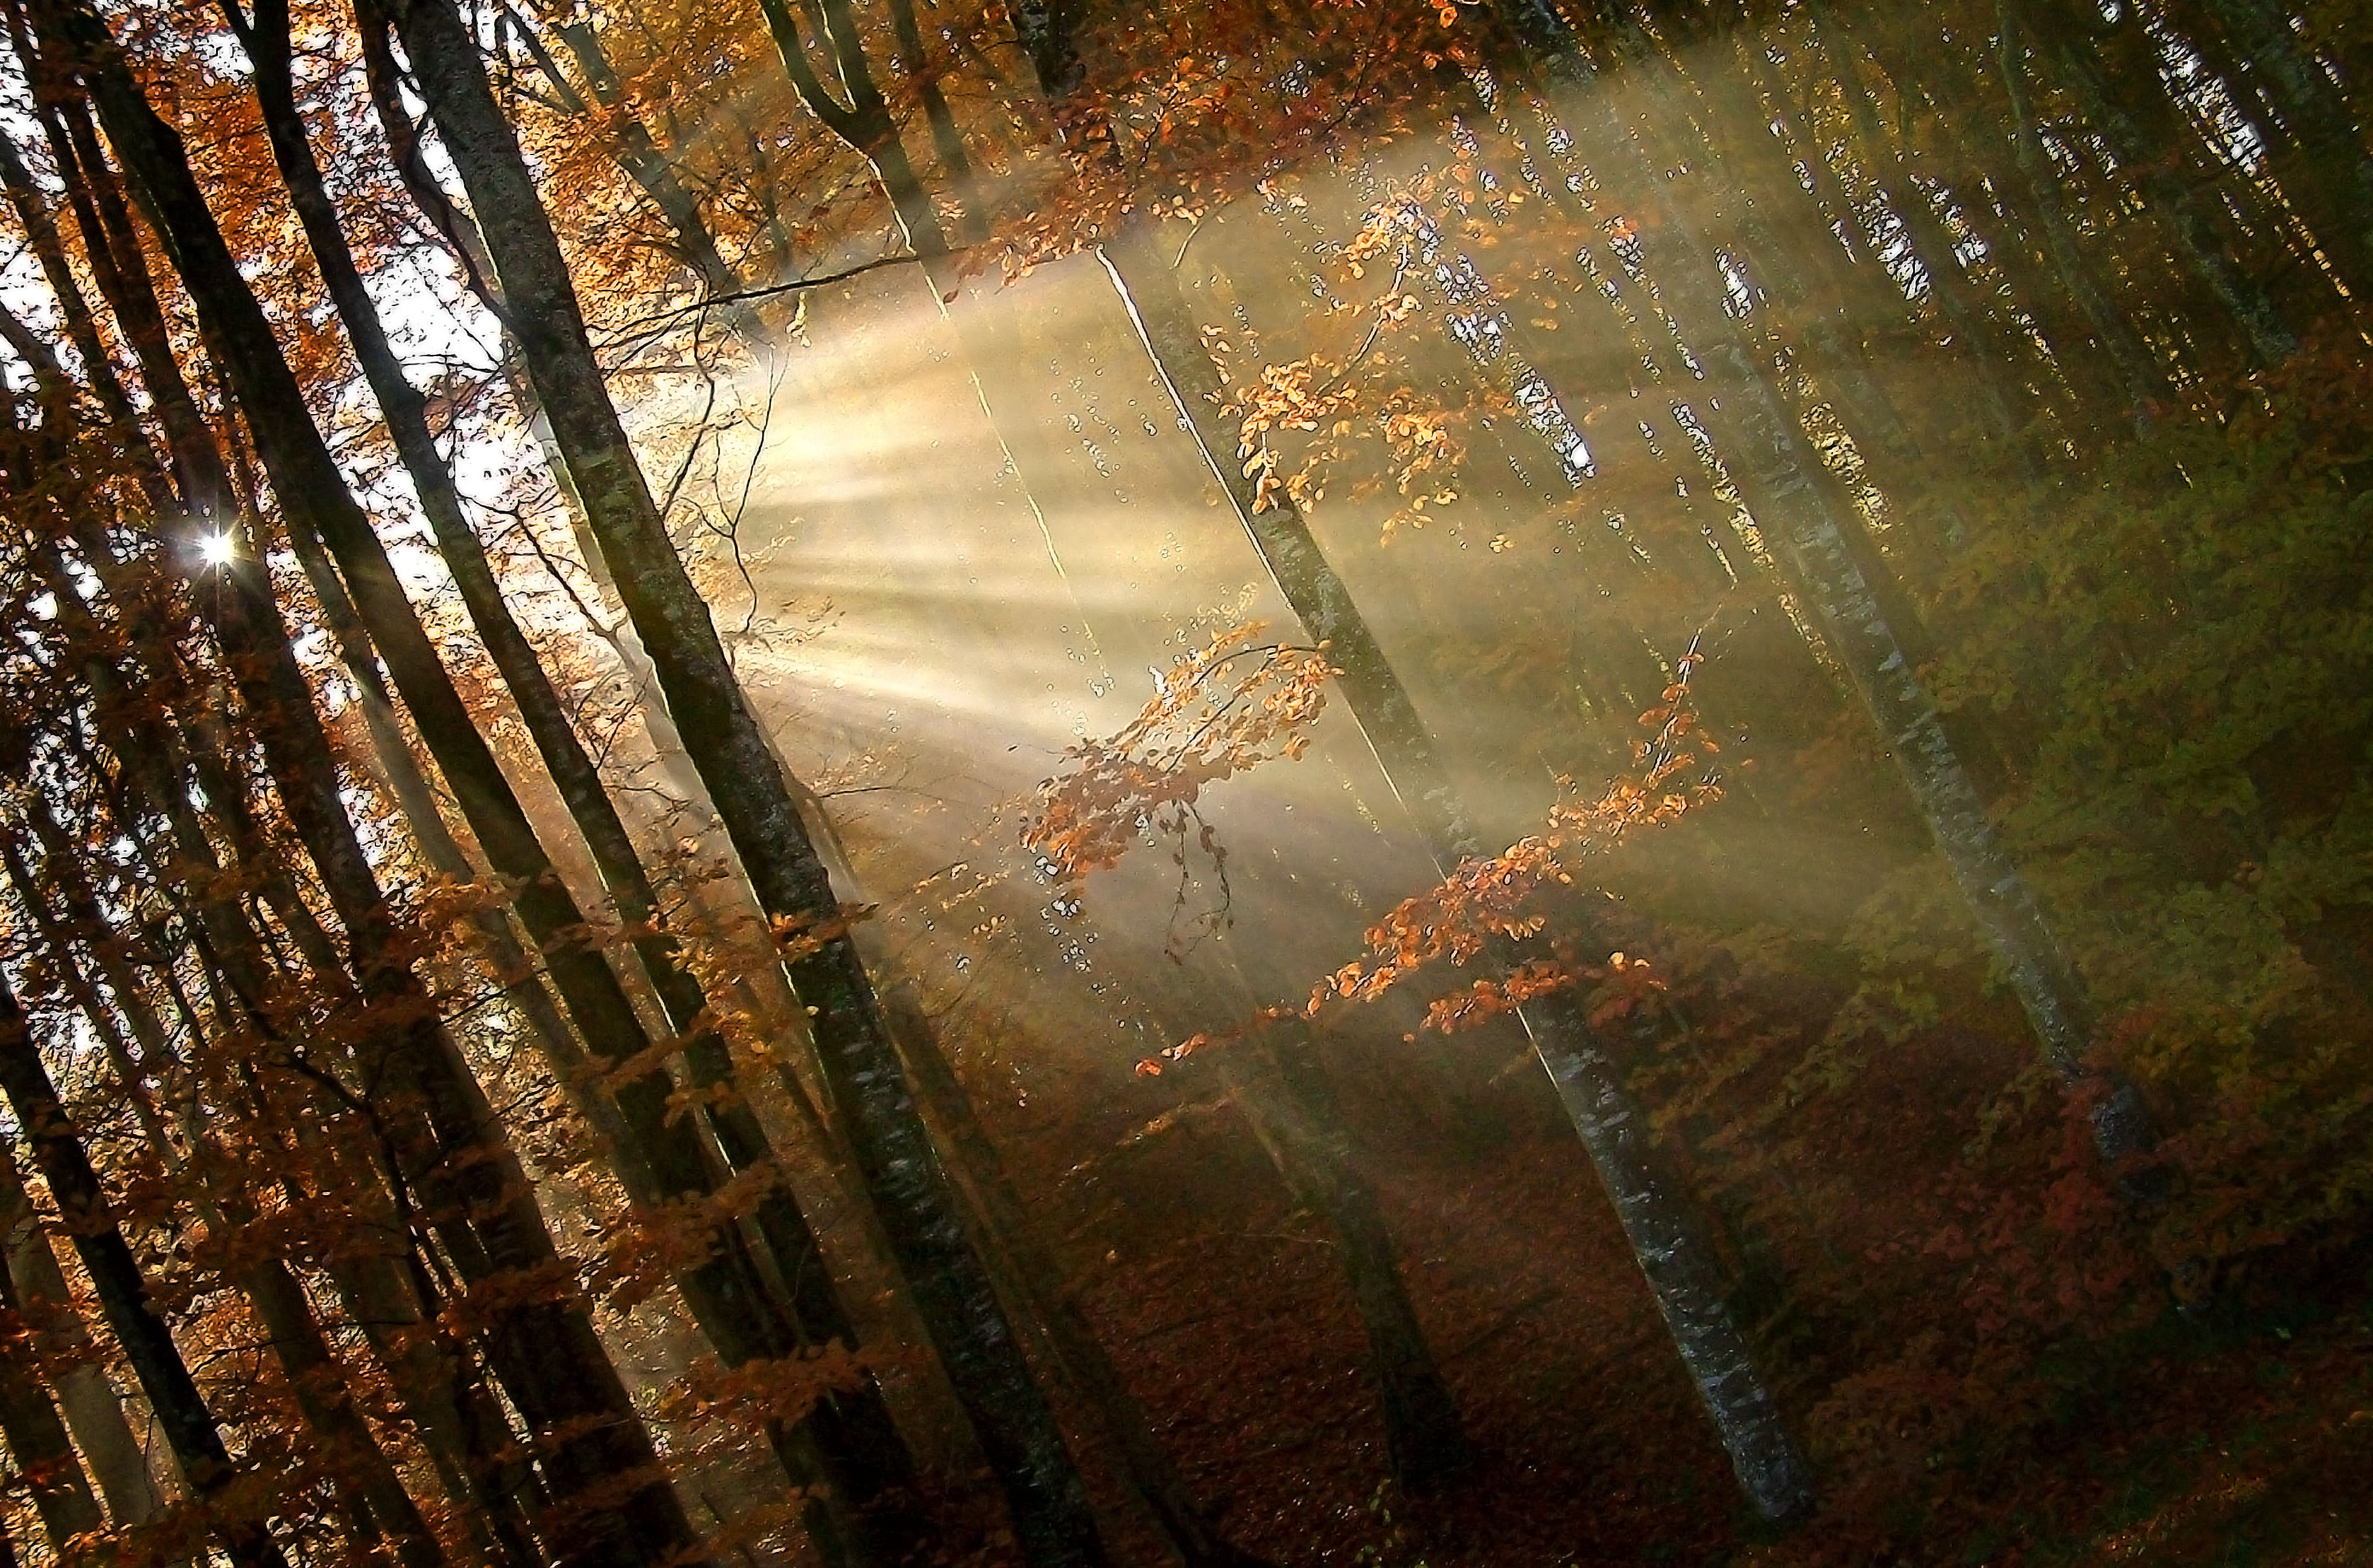 Солнечный луч солнечный дождик. Луч солнца сквозь ветви. Луч солнца сквозь дождь. Солнце сквозь осенний лес. Лучи солнца пробившиеся сквозь листву.